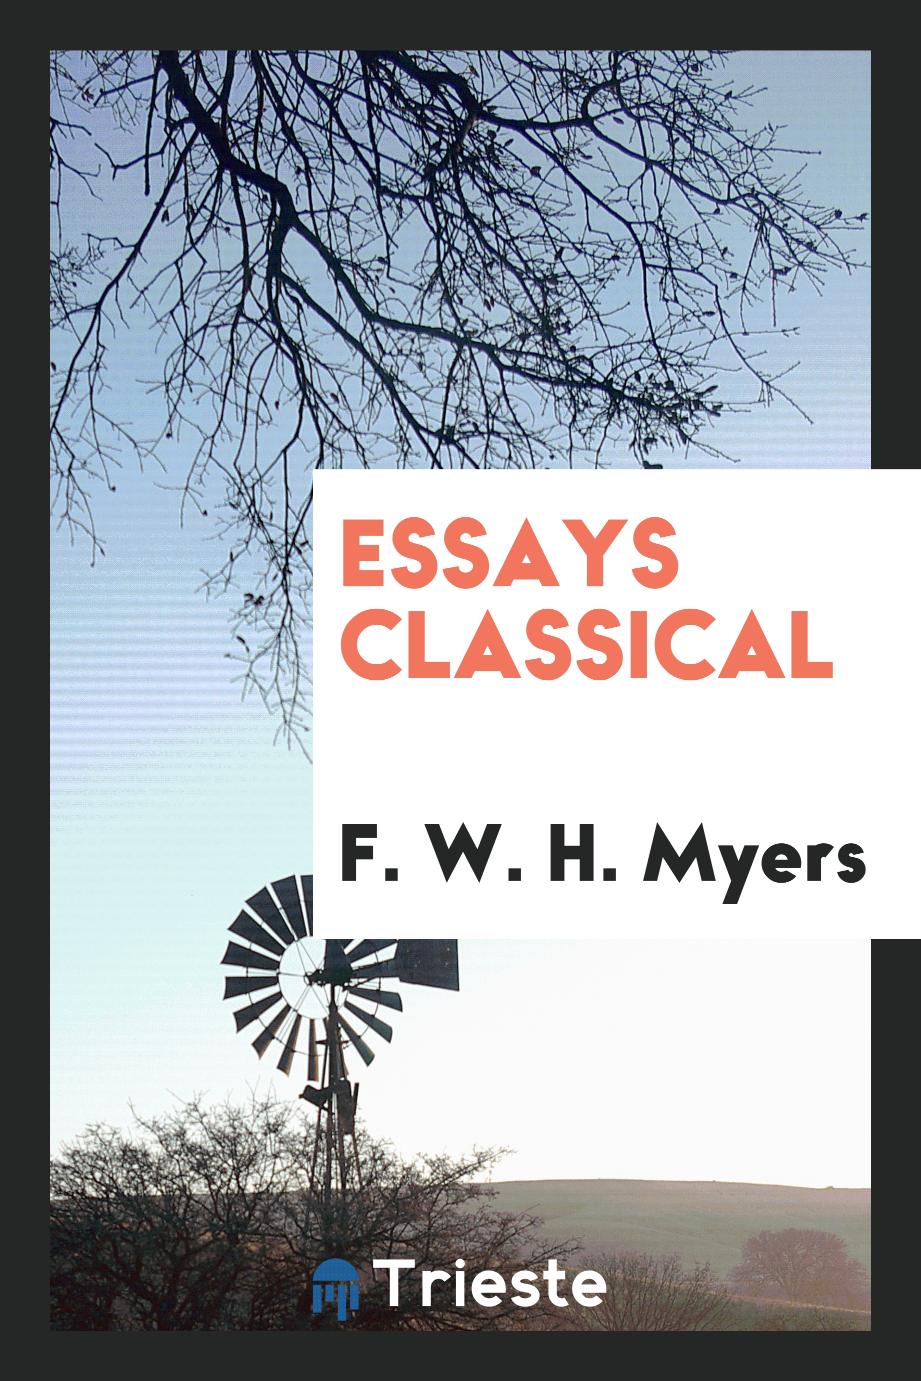 Essays classical